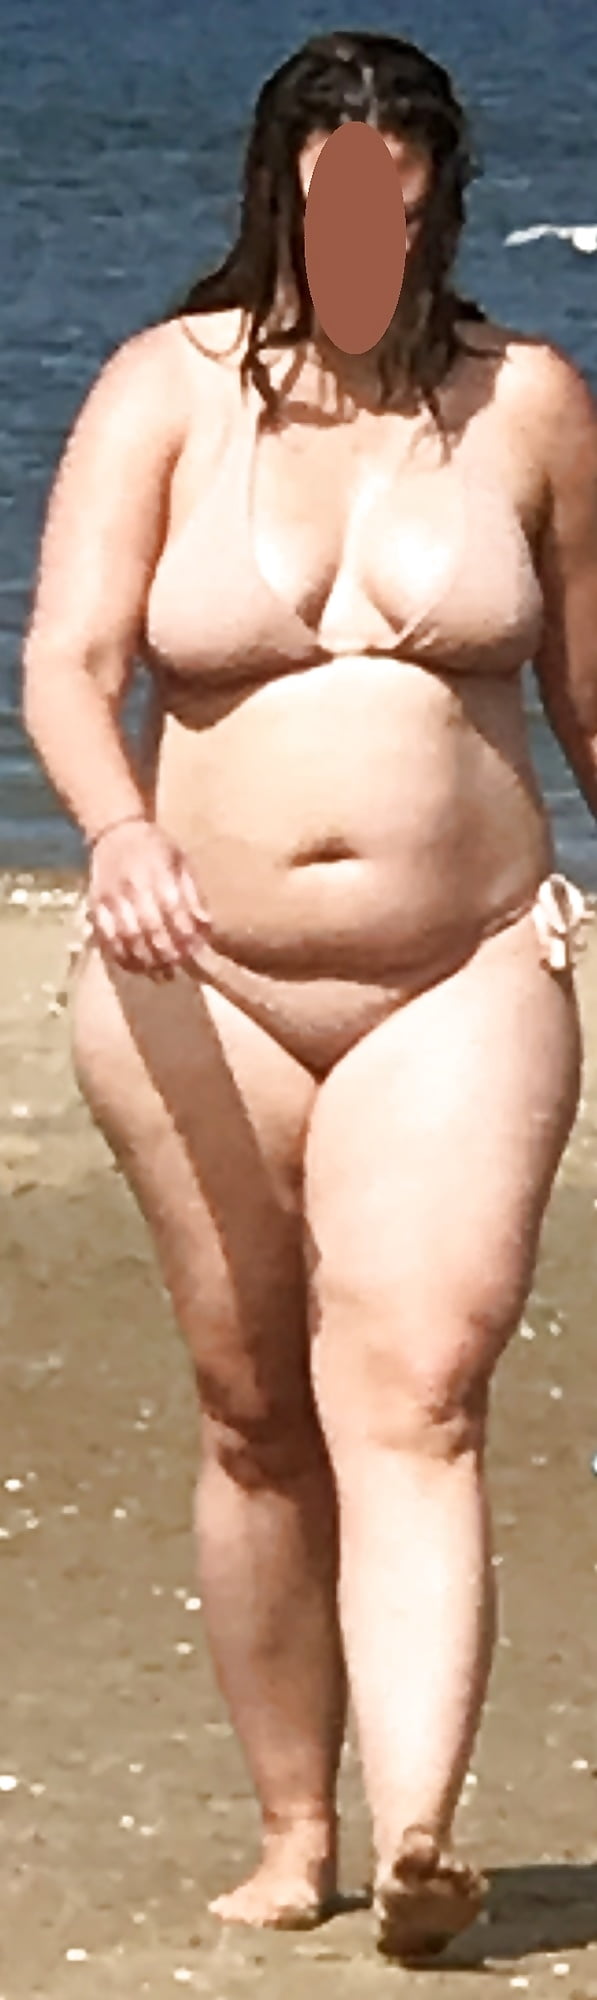 My_wife _Butt_ _Boobs_on_the_Beach_2_ secret_photos _ (9/9)